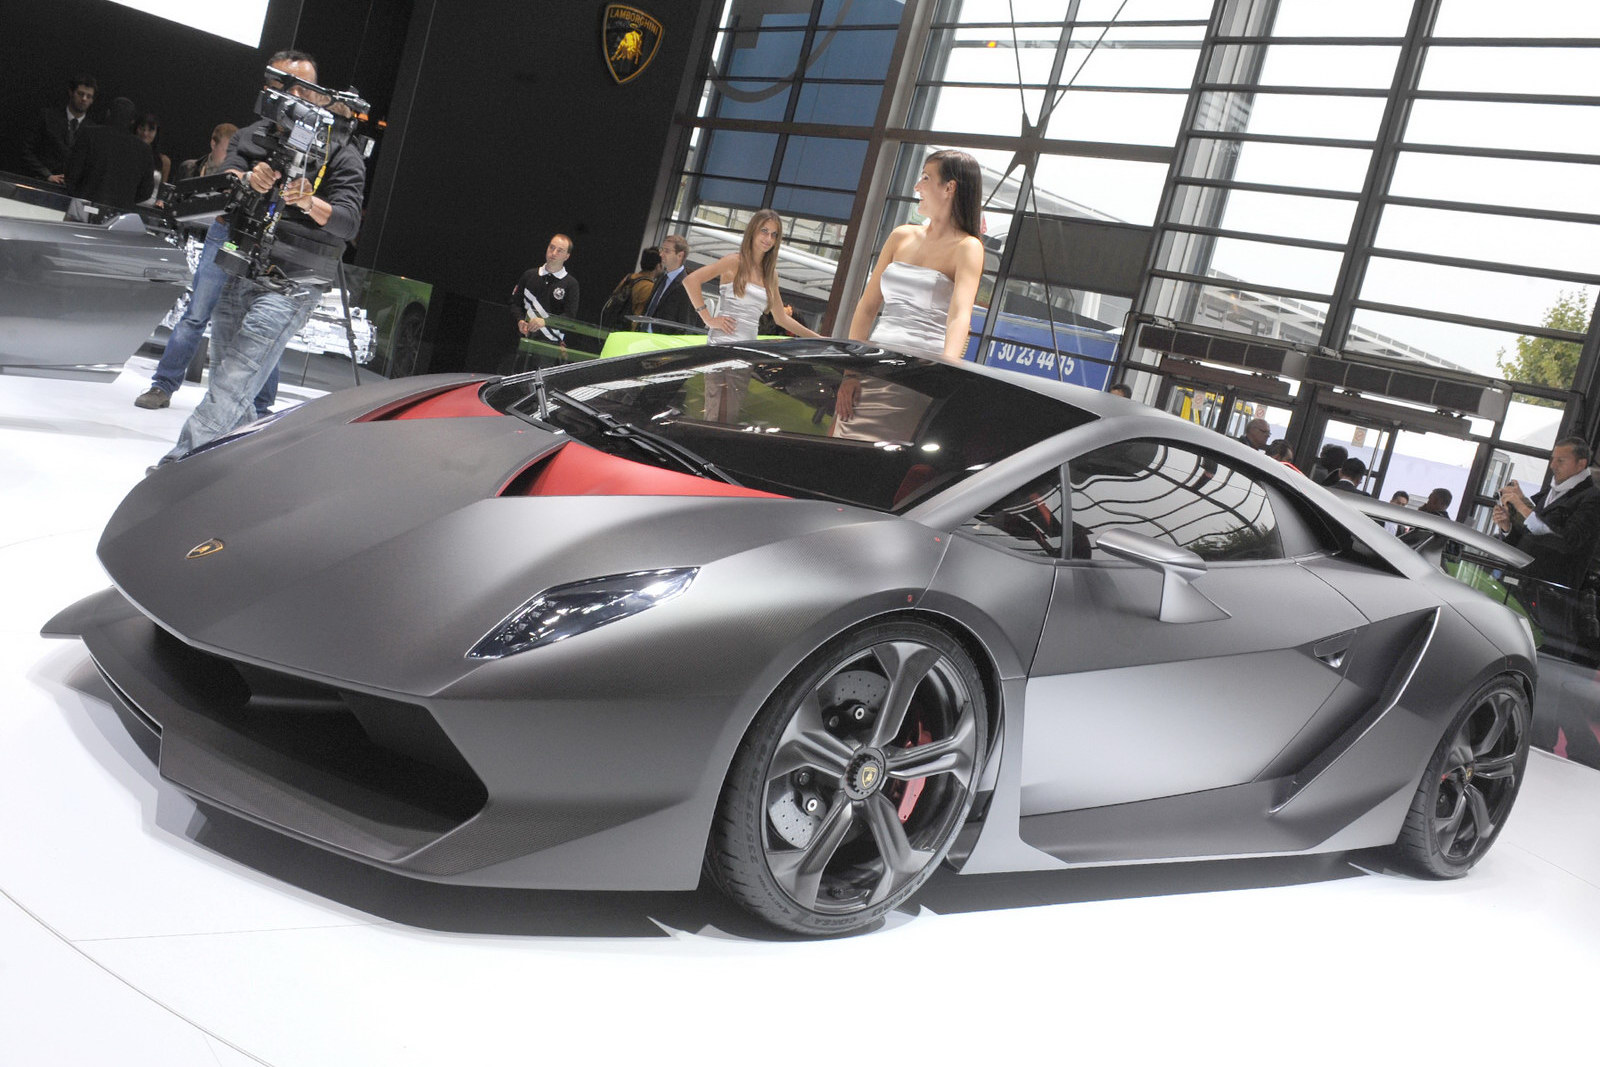 Have A Spare $3 Million? You Can Buy A Lamborghini Sesto ...